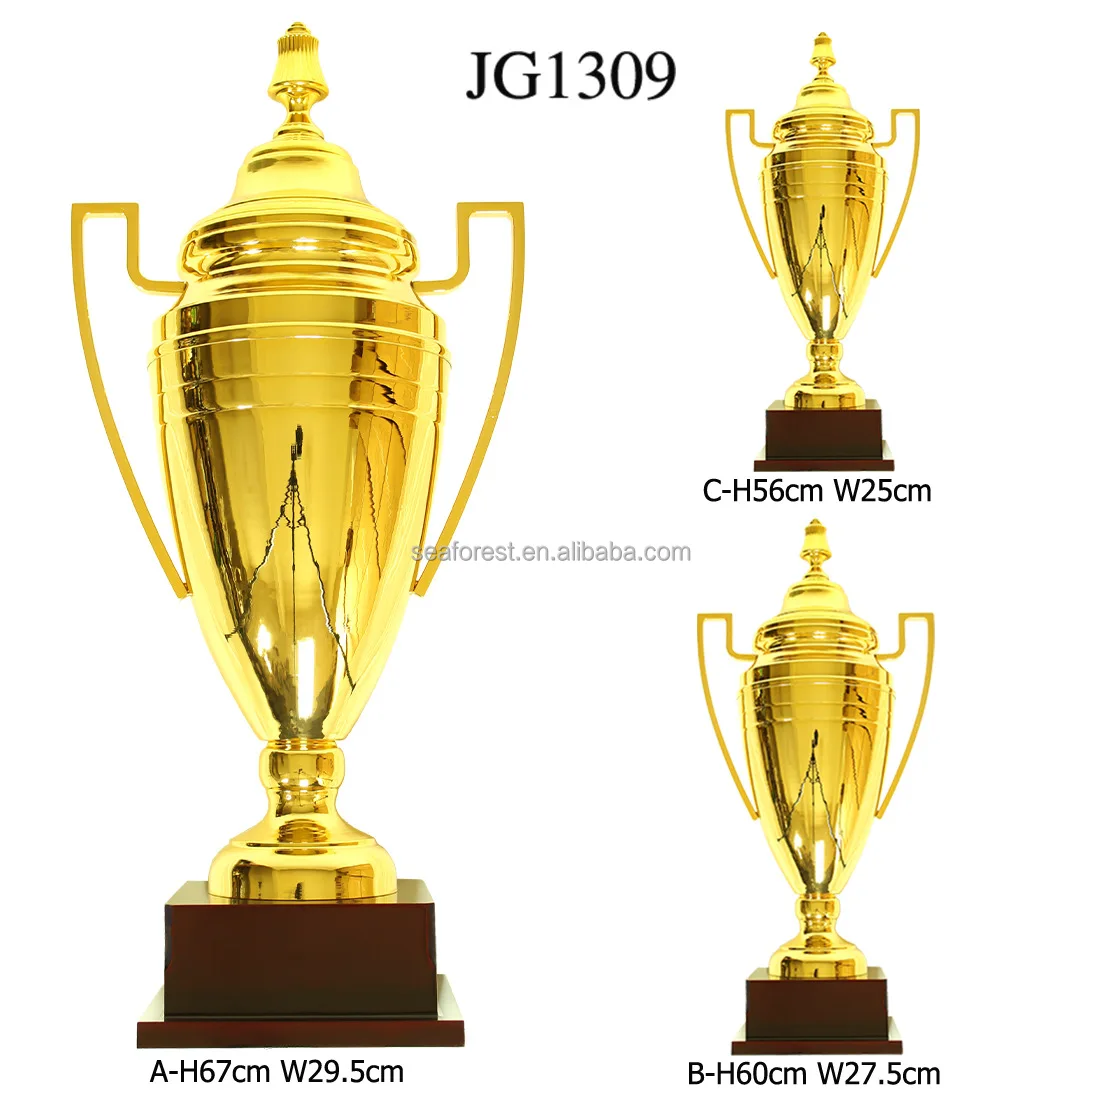 IWRD Coppa Trofeo Trofei del Trofeo della Gold Trophy Cup per Cerimonie,Copper 